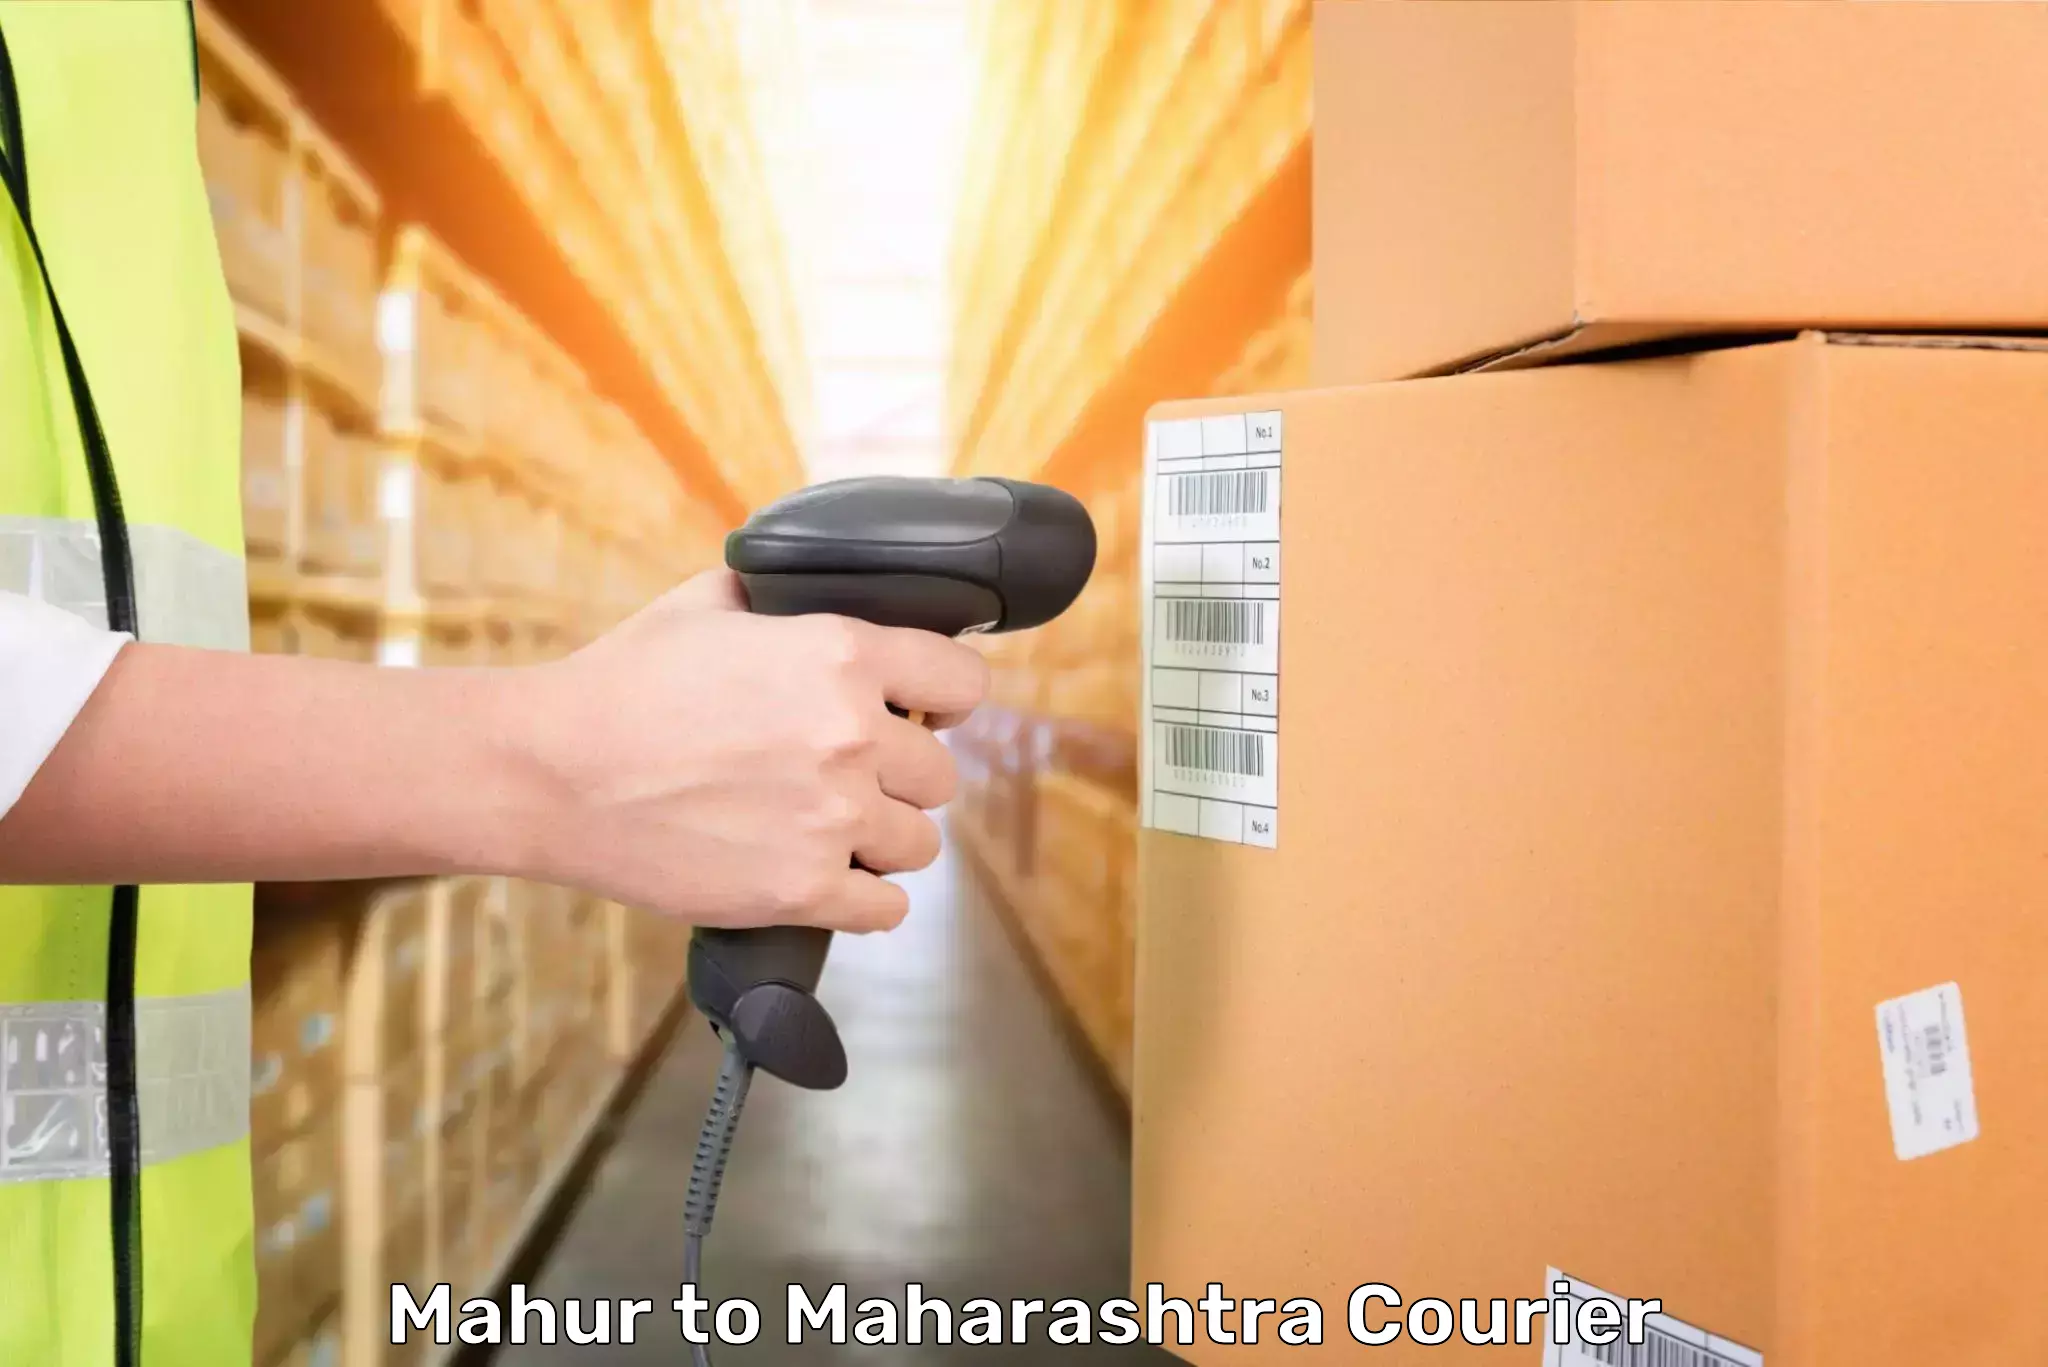 Luggage delivery providers Mahur to Maharashtra